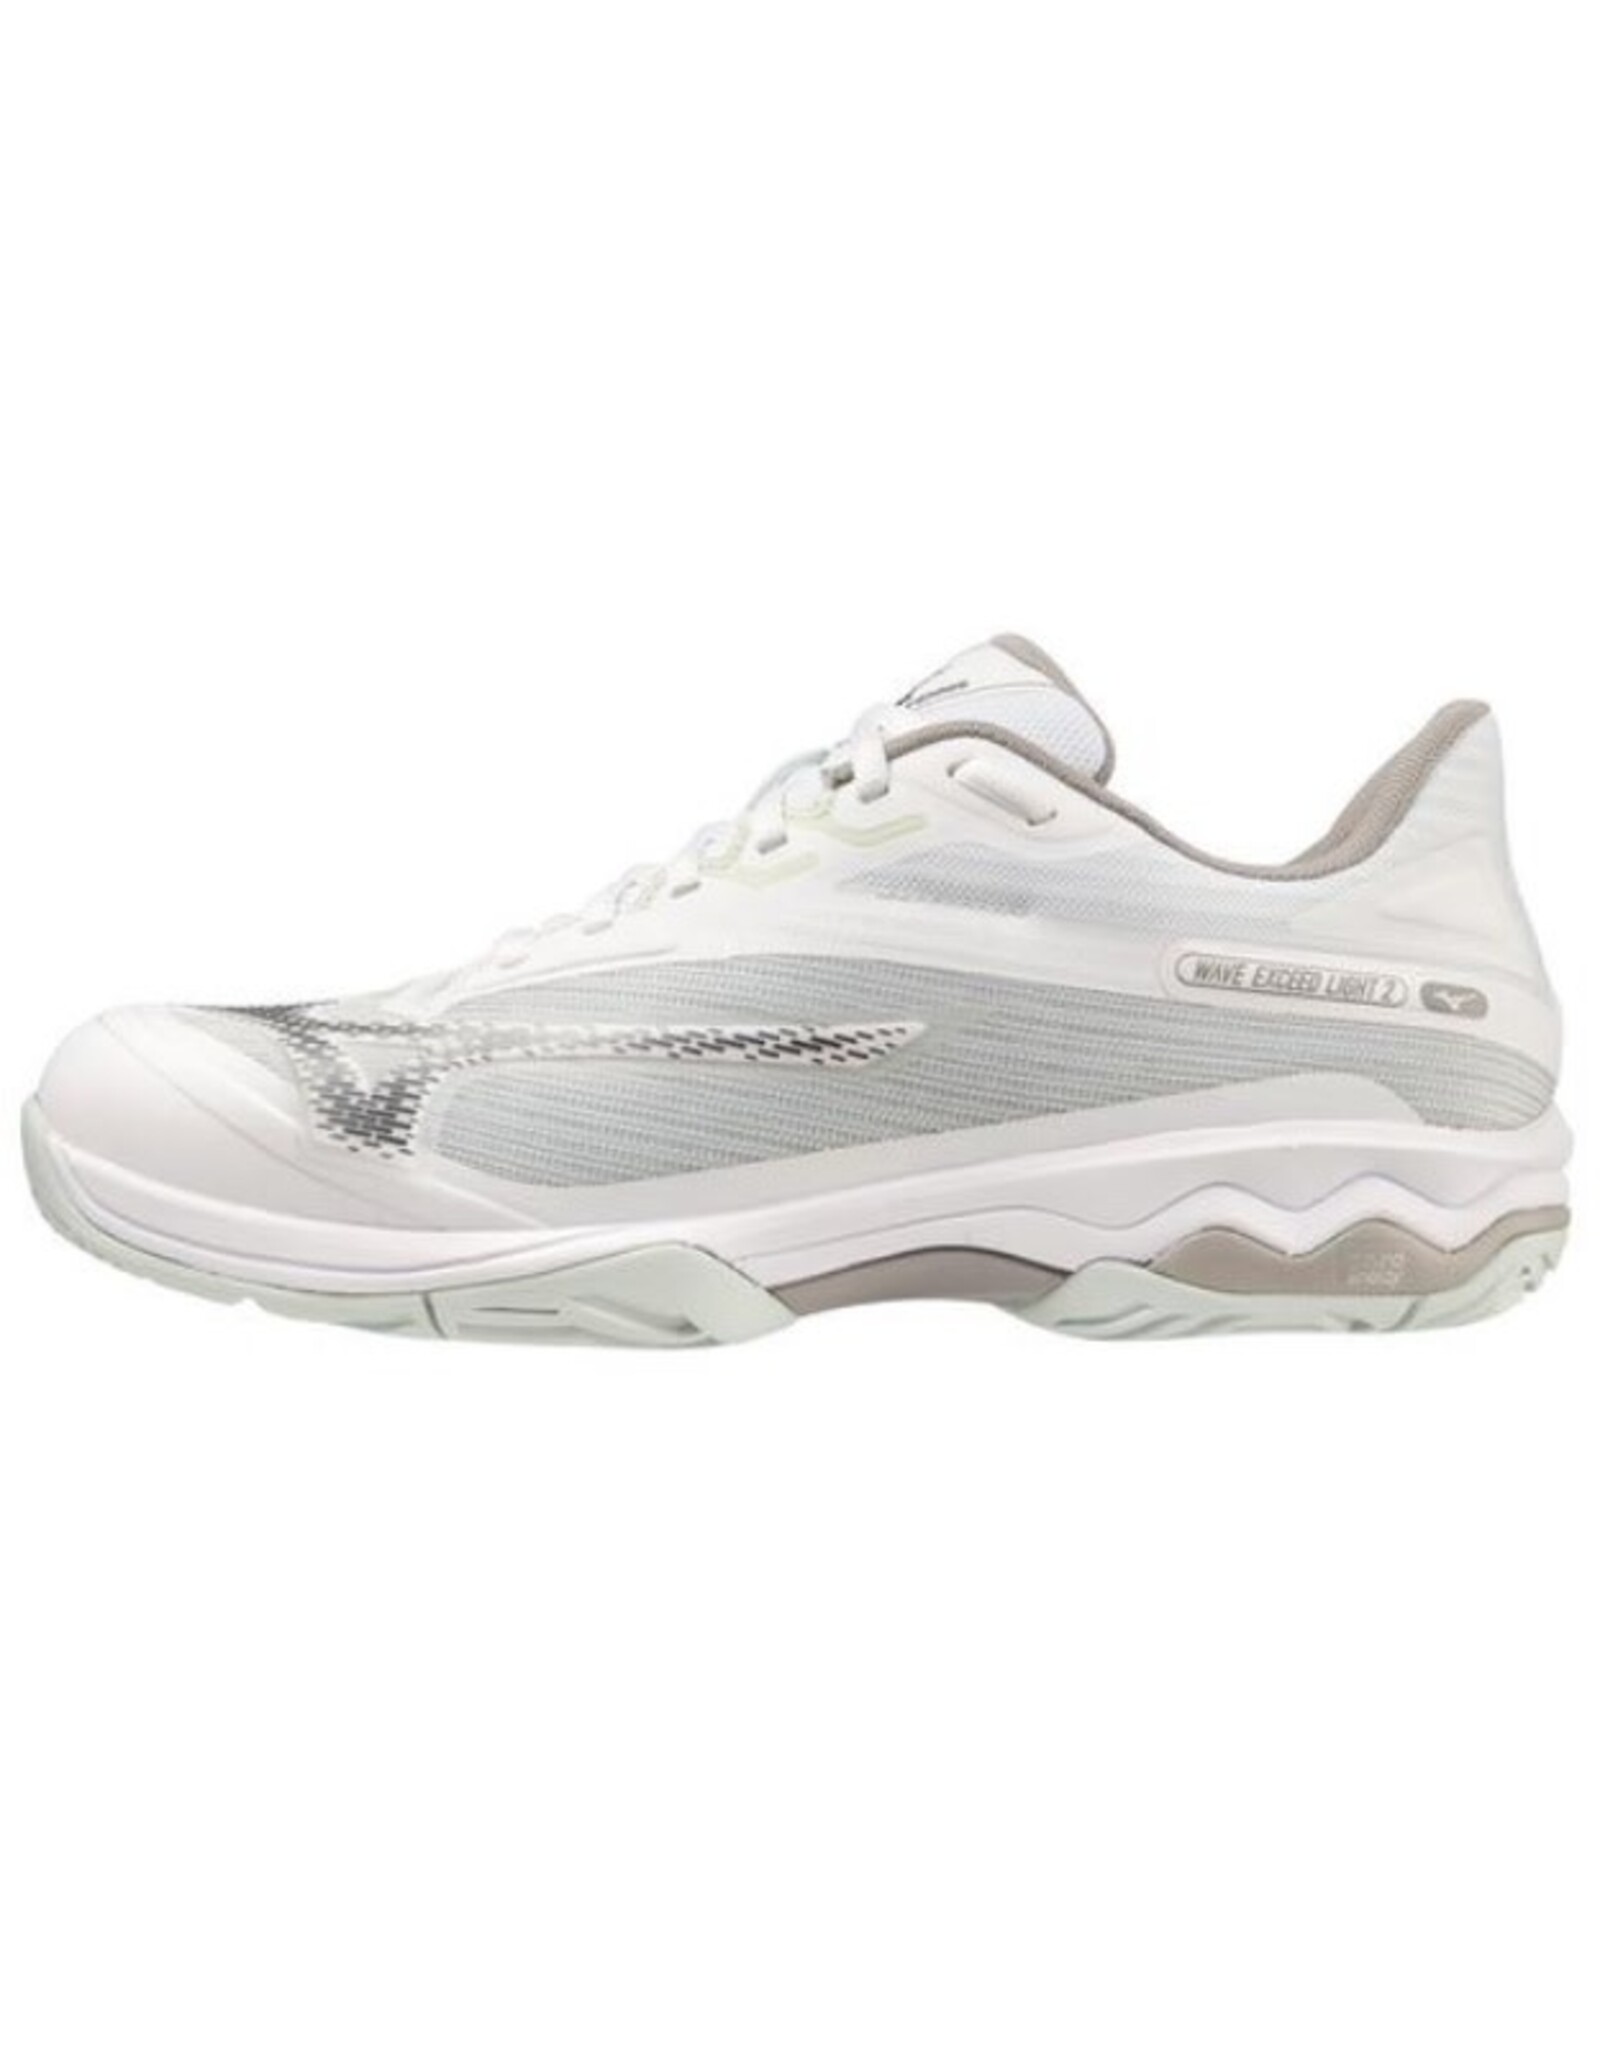 Mizuno Mizuno Women's Wave Exceed Light 2AC (White/Metallic Grey) Tennis Shoes